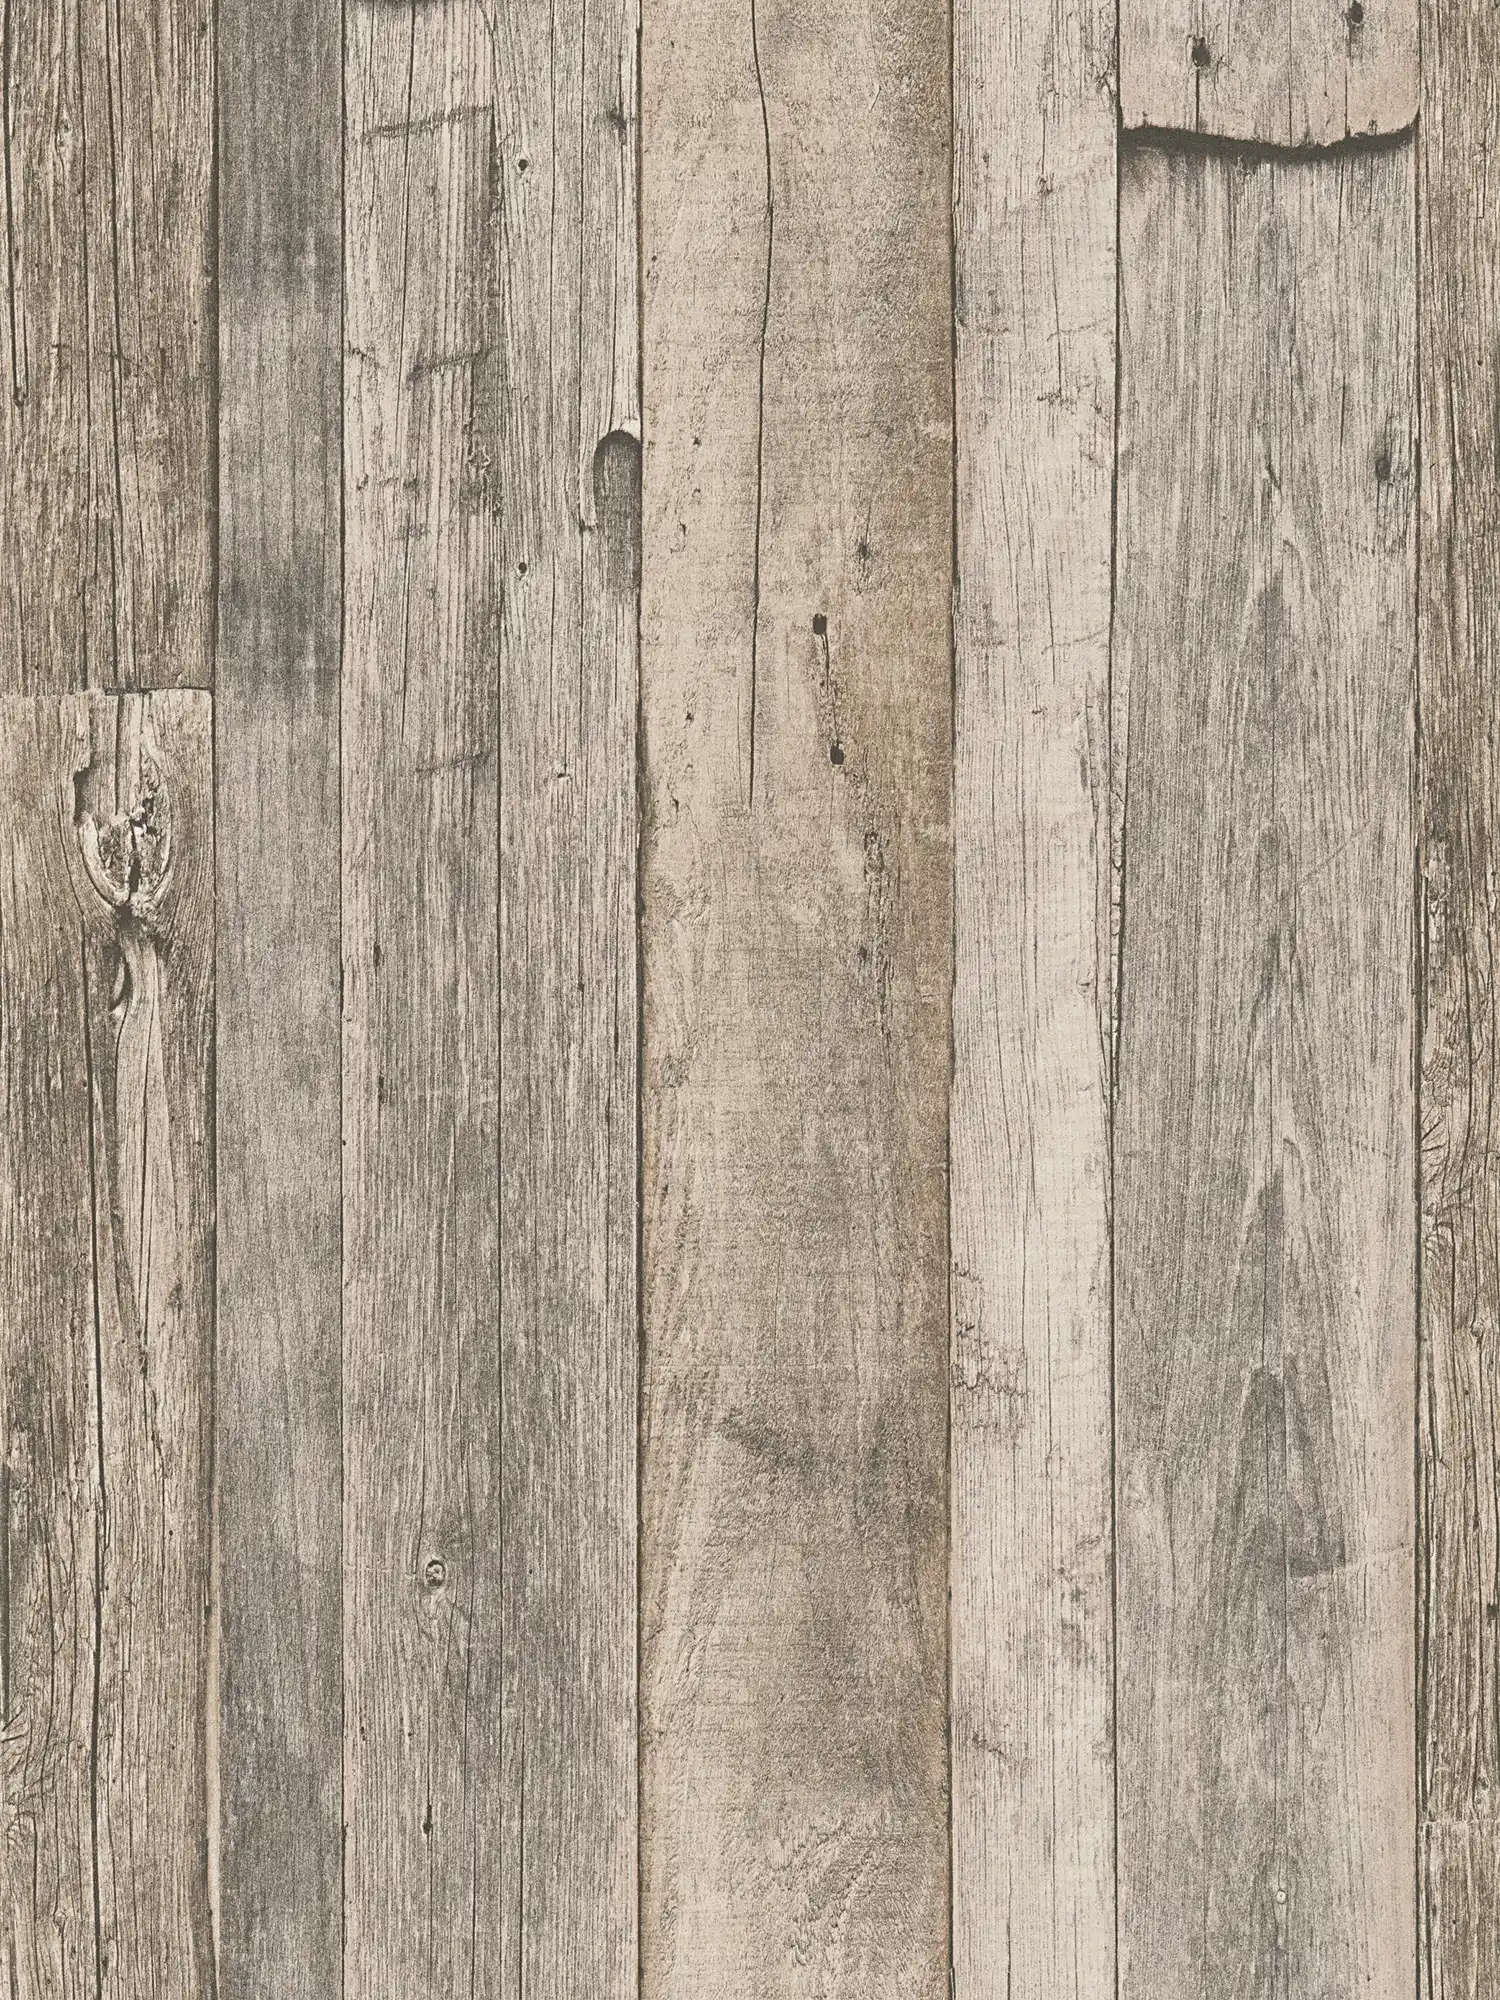         Holztapete mit Brettern im rustikalen Industrial Design – Beige, Schwarz, Creme
    